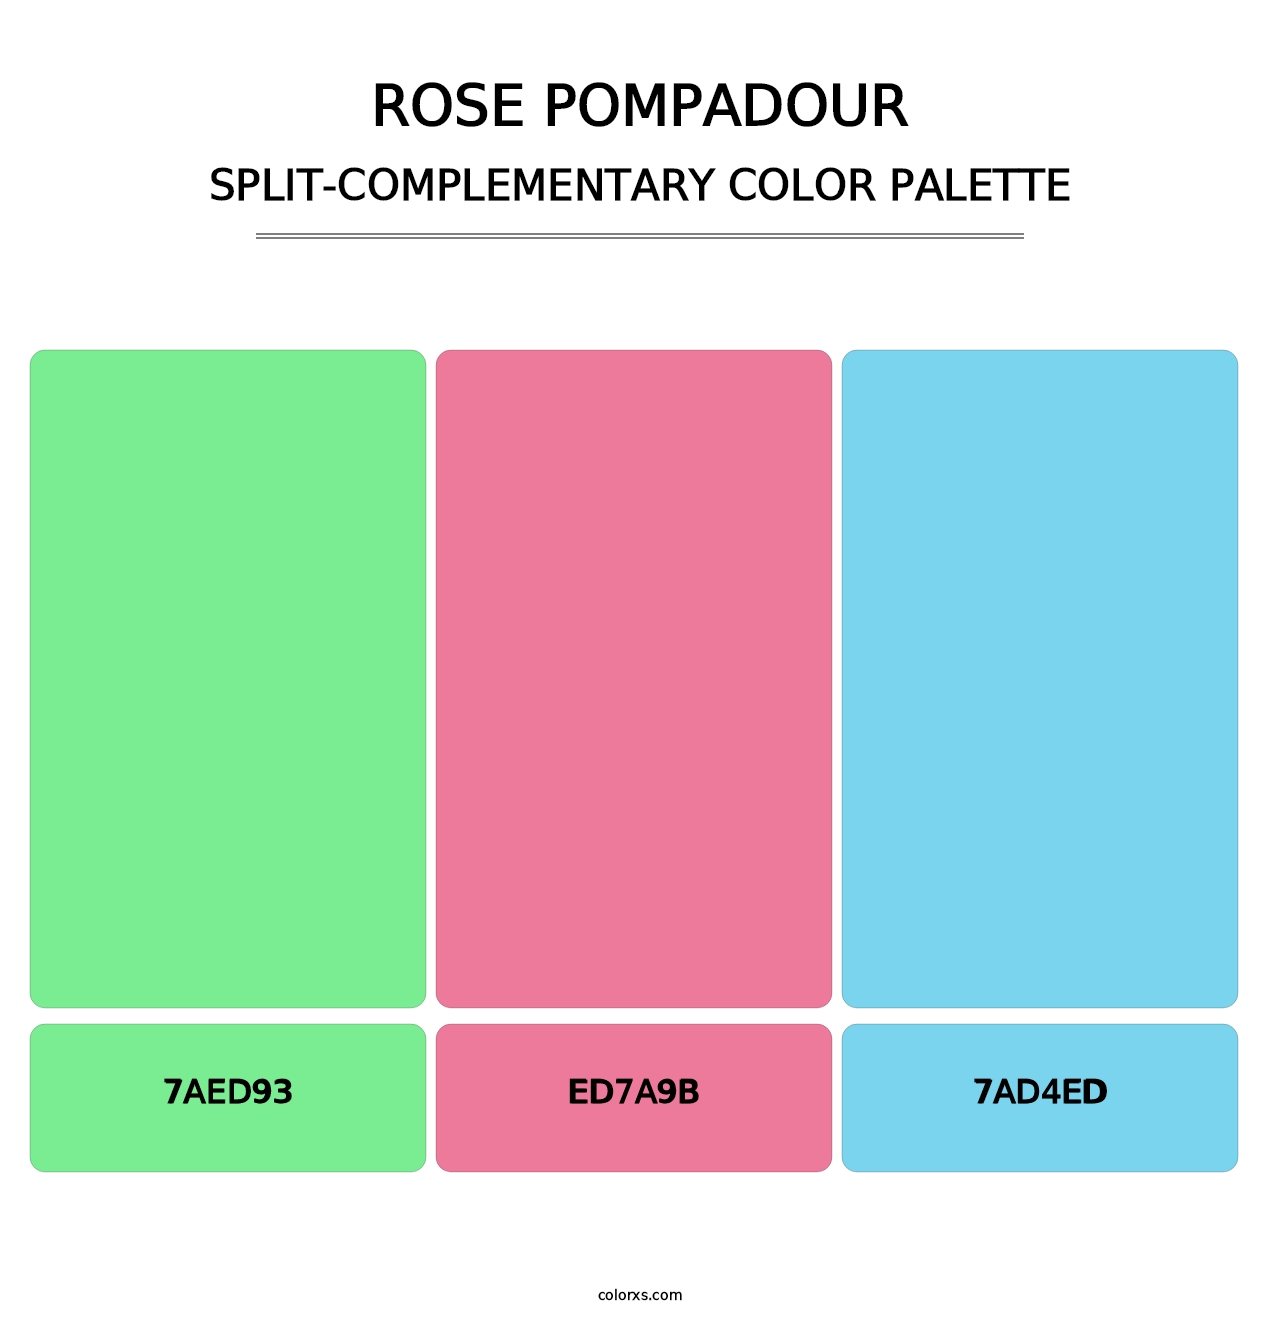 Rose Pompadour - Split-Complementary Color Palette